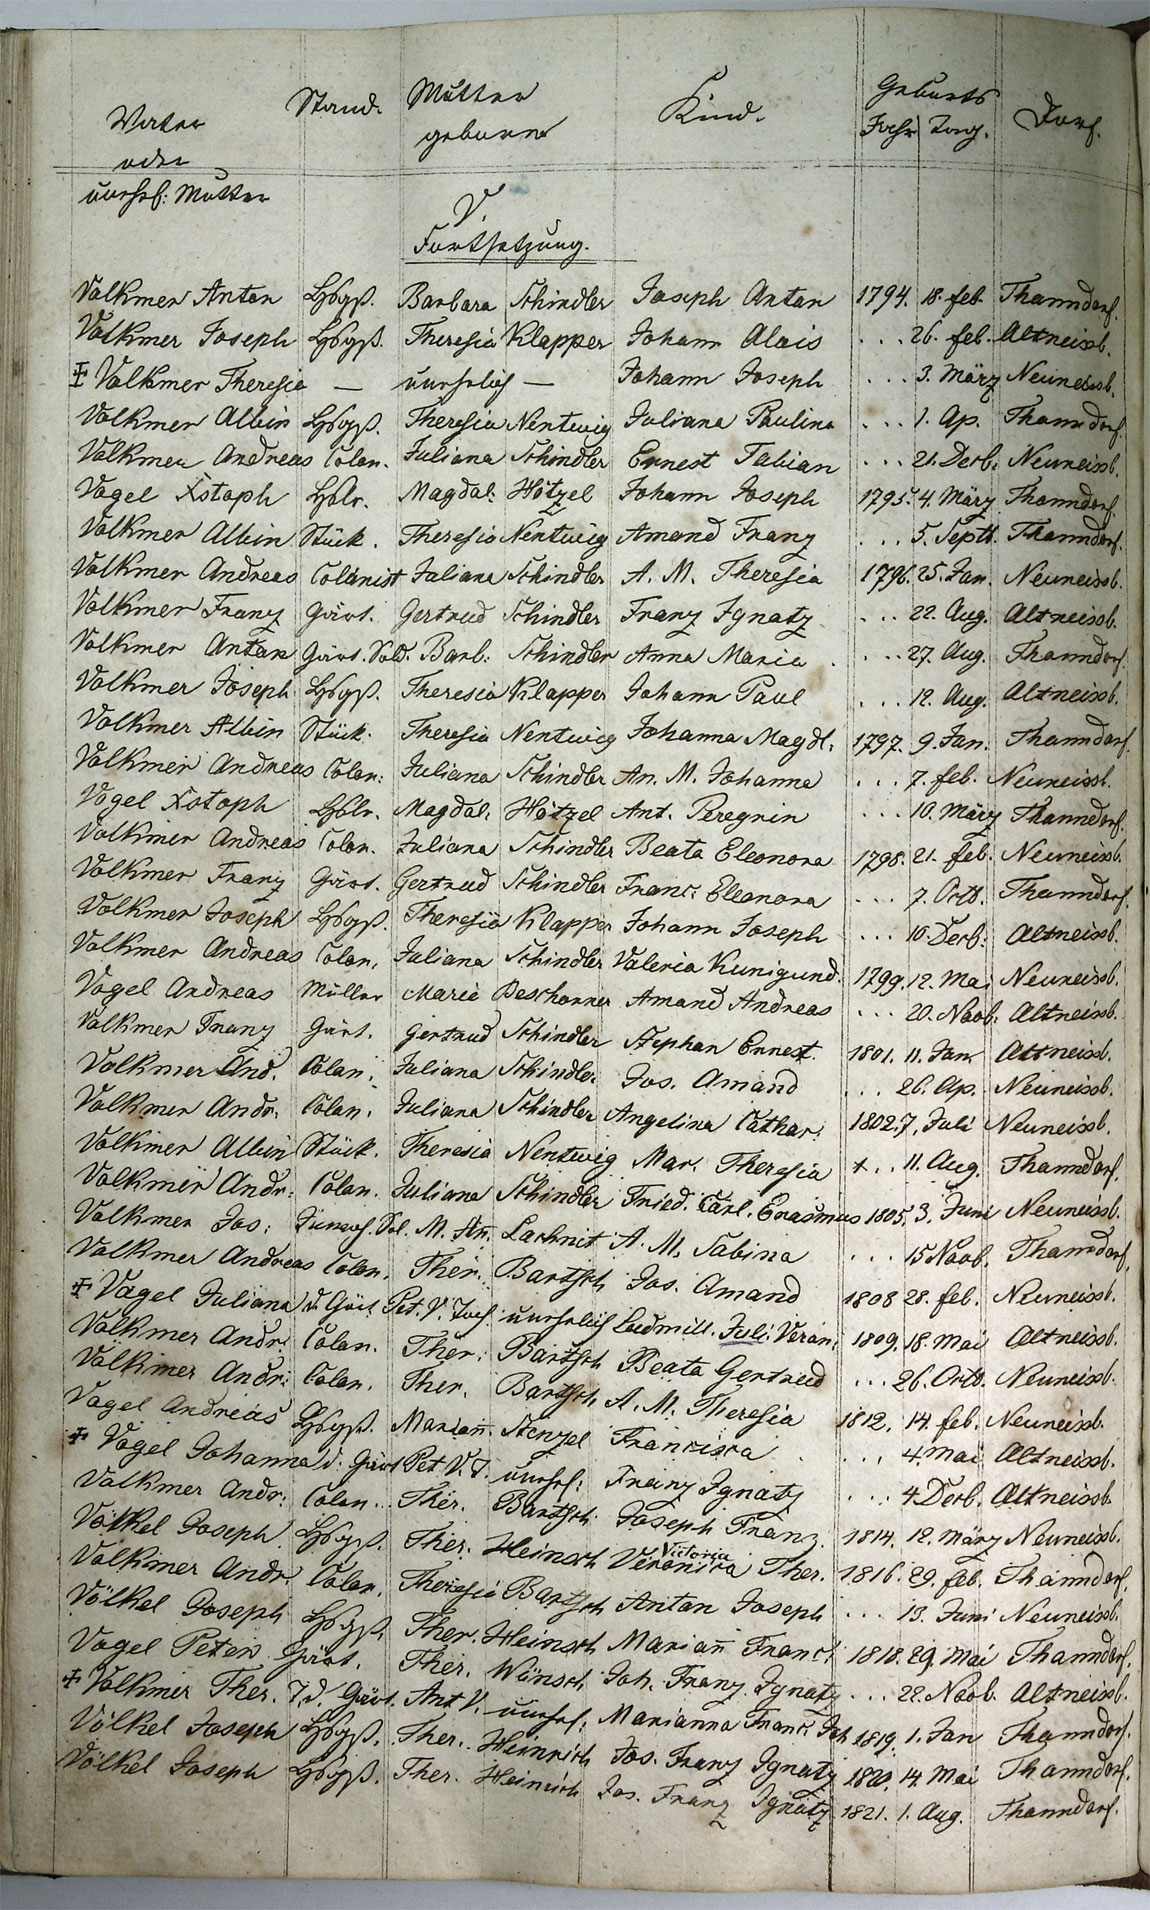 Taufregister 1770 - 1889 Seite 163